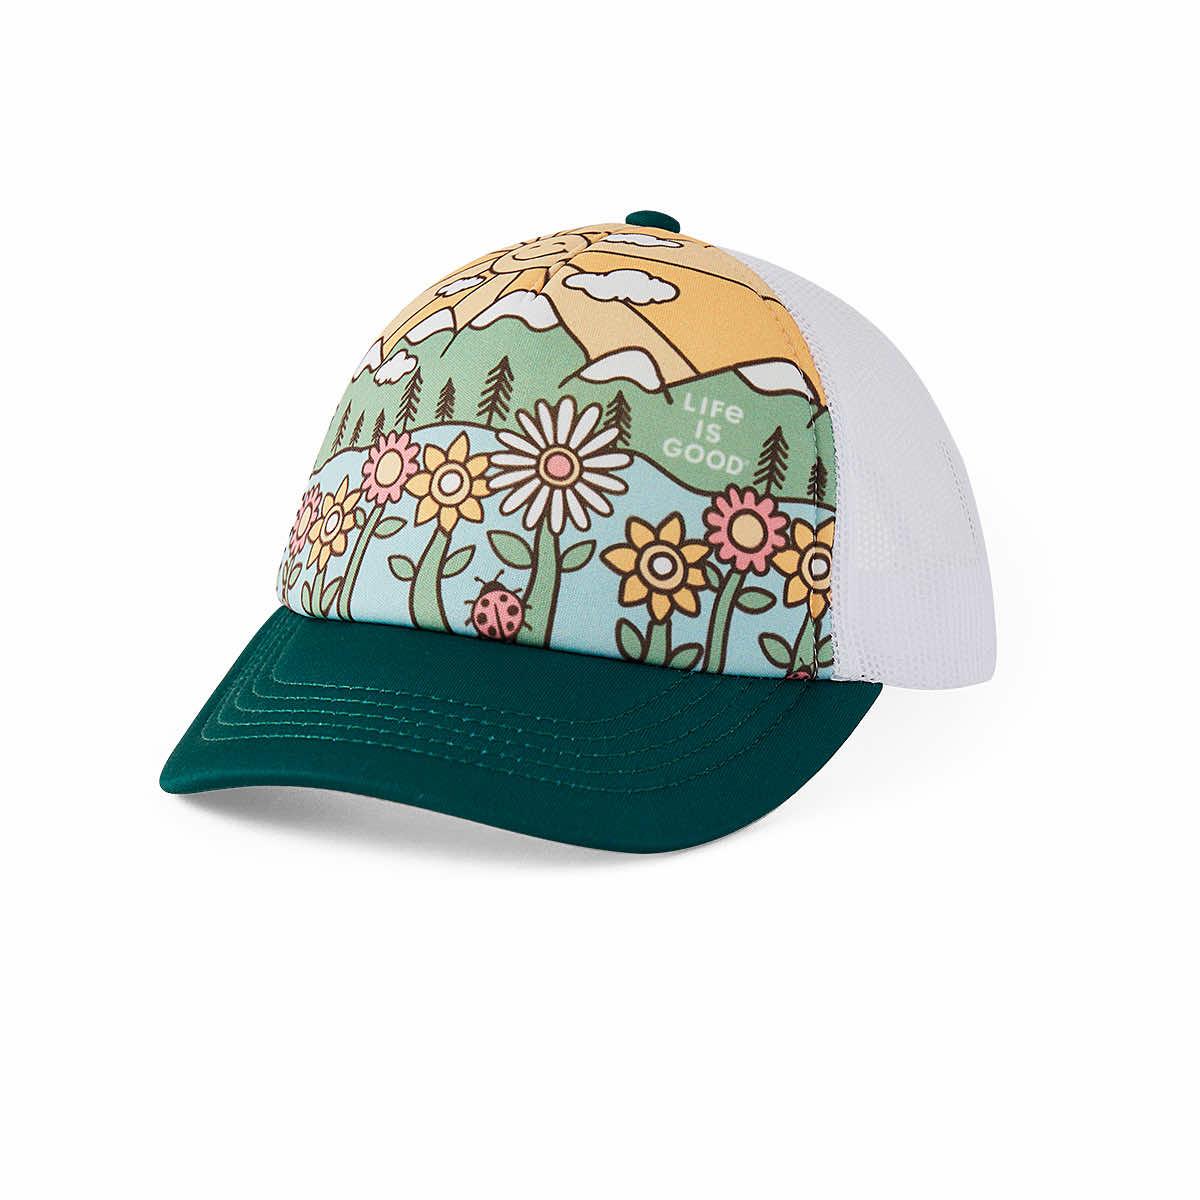 Kids' Here Comes The Sun Retro Trucker Hat